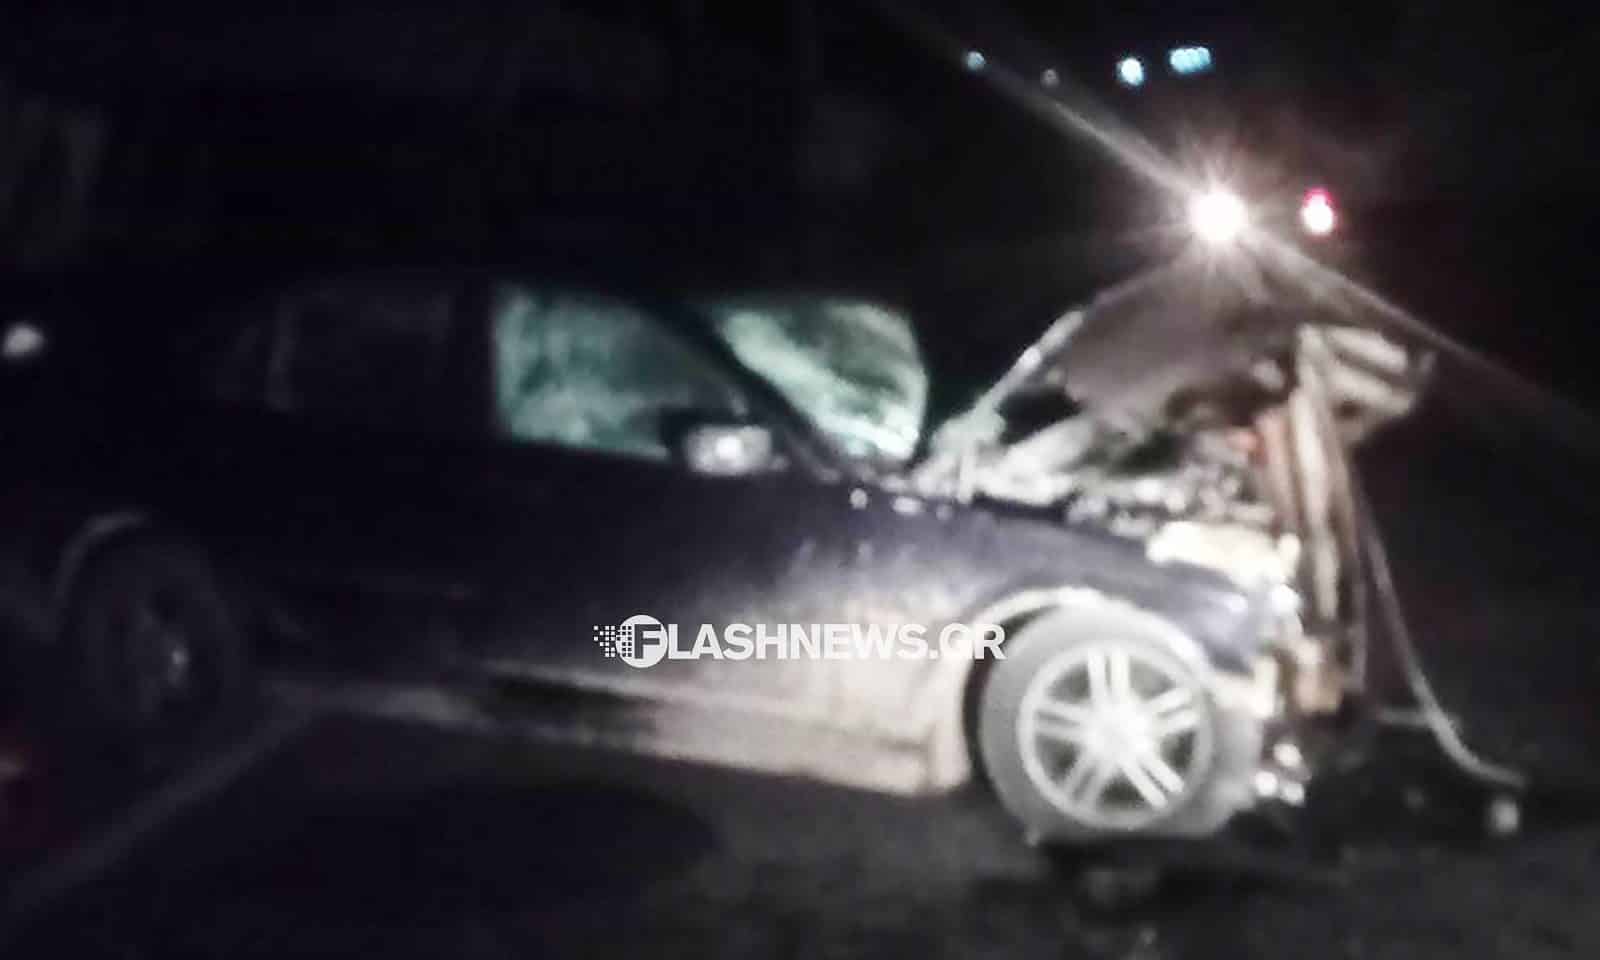 Χανιά: Τροχαίο ατύχημα στον Αποκόρωνα με τραυματίες (φωτο - video)